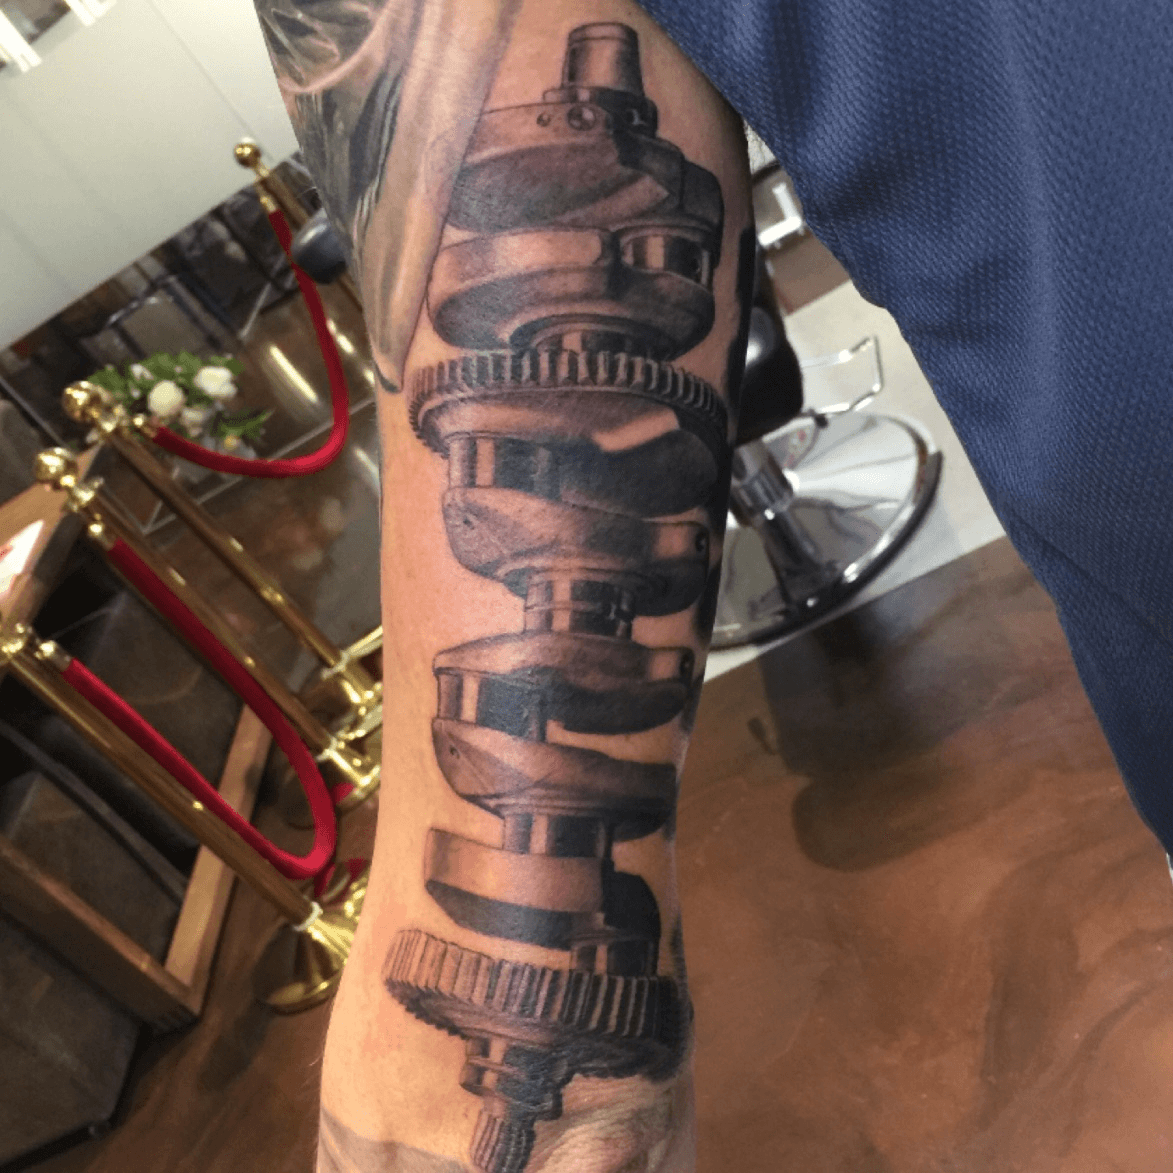 Full sleeve car part tattoo in progress Black and grey realistic  Tattoos  Piston tattoo Mechanic tattoo